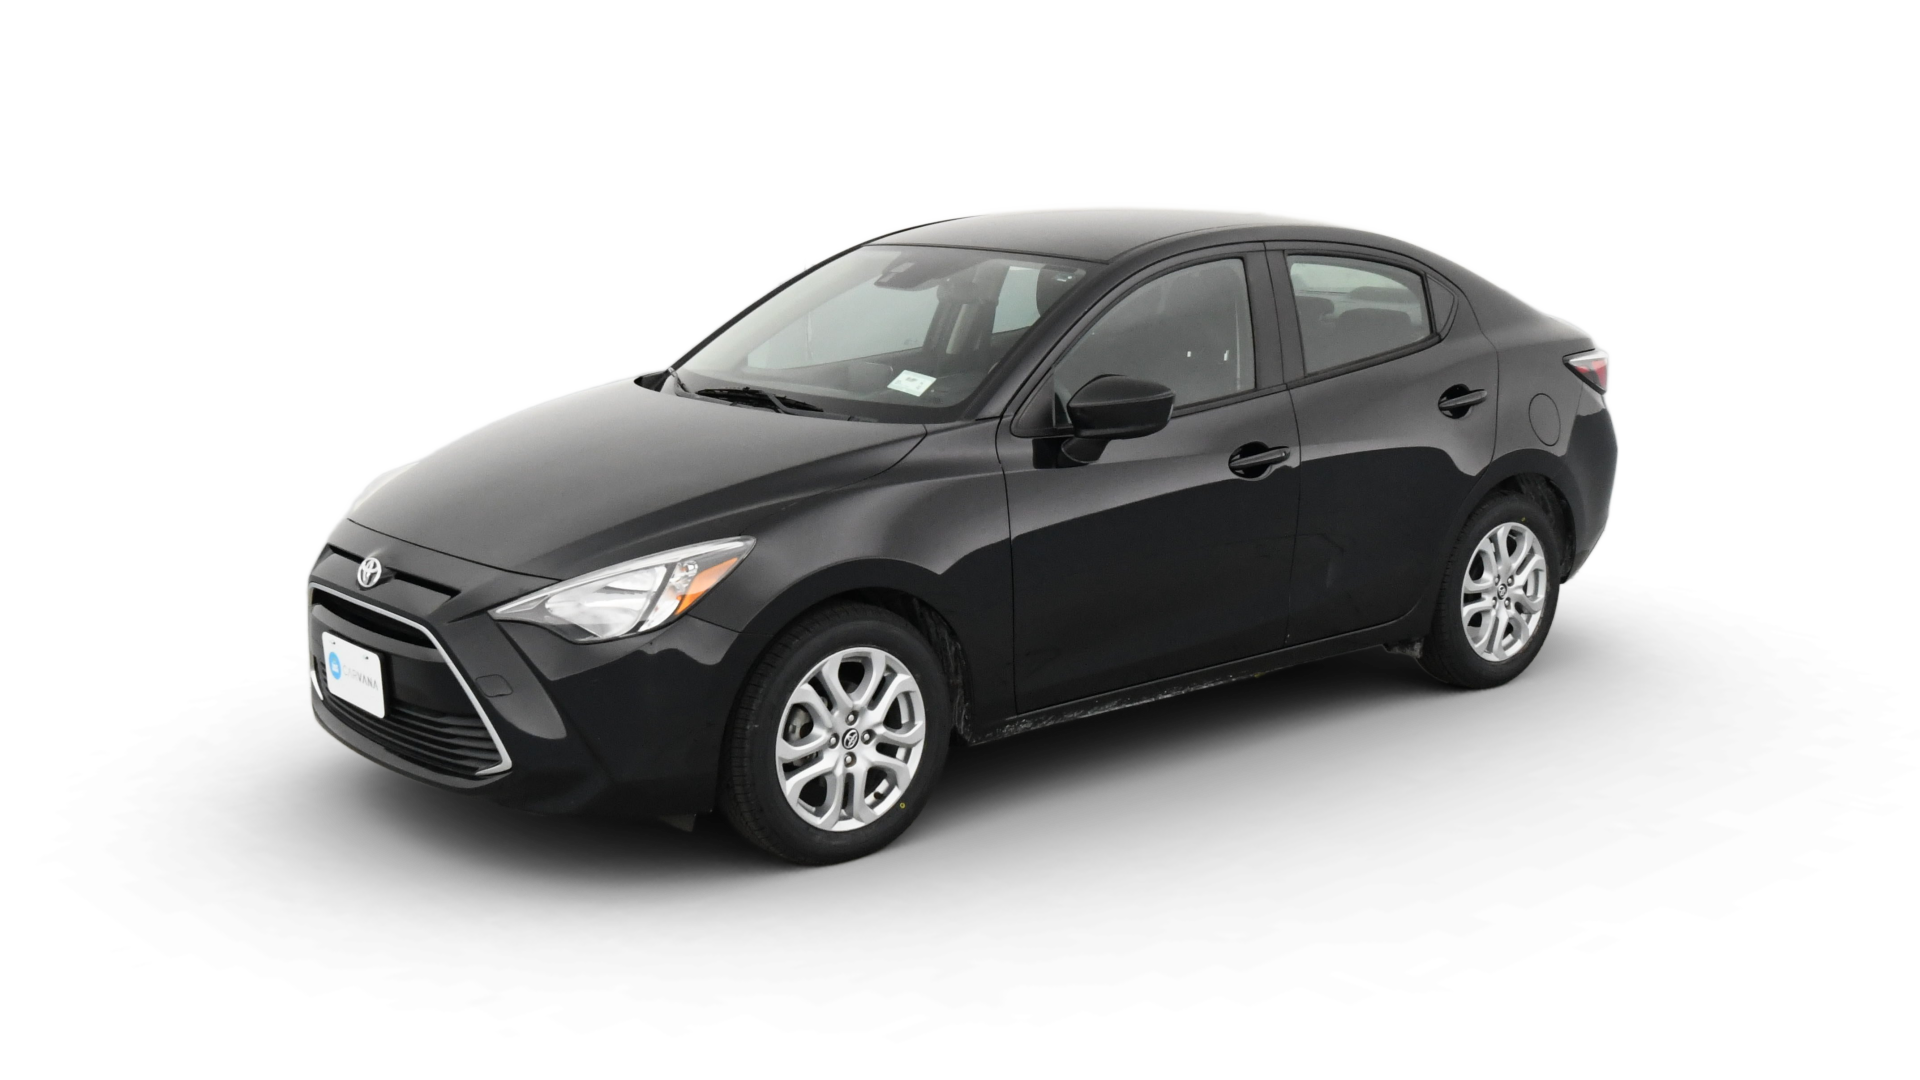 Toyota Yaris iA model image.